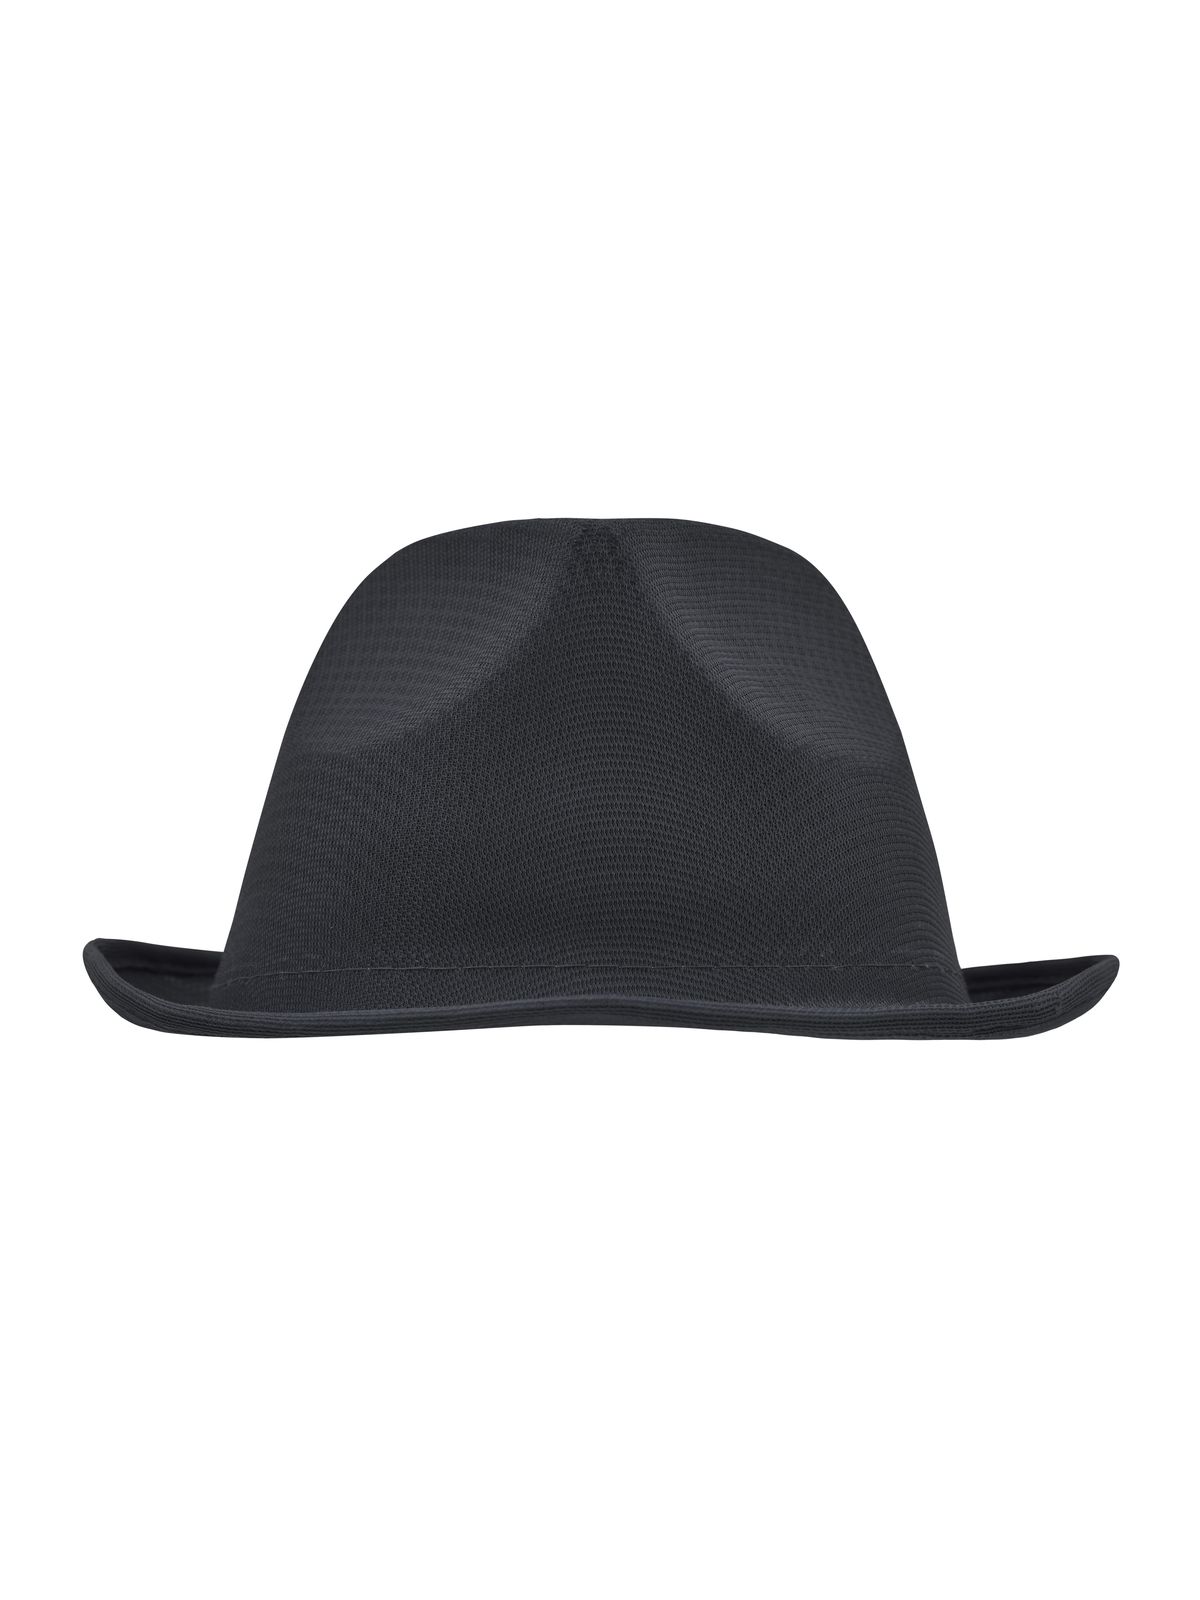 promotion-hat-black.webp